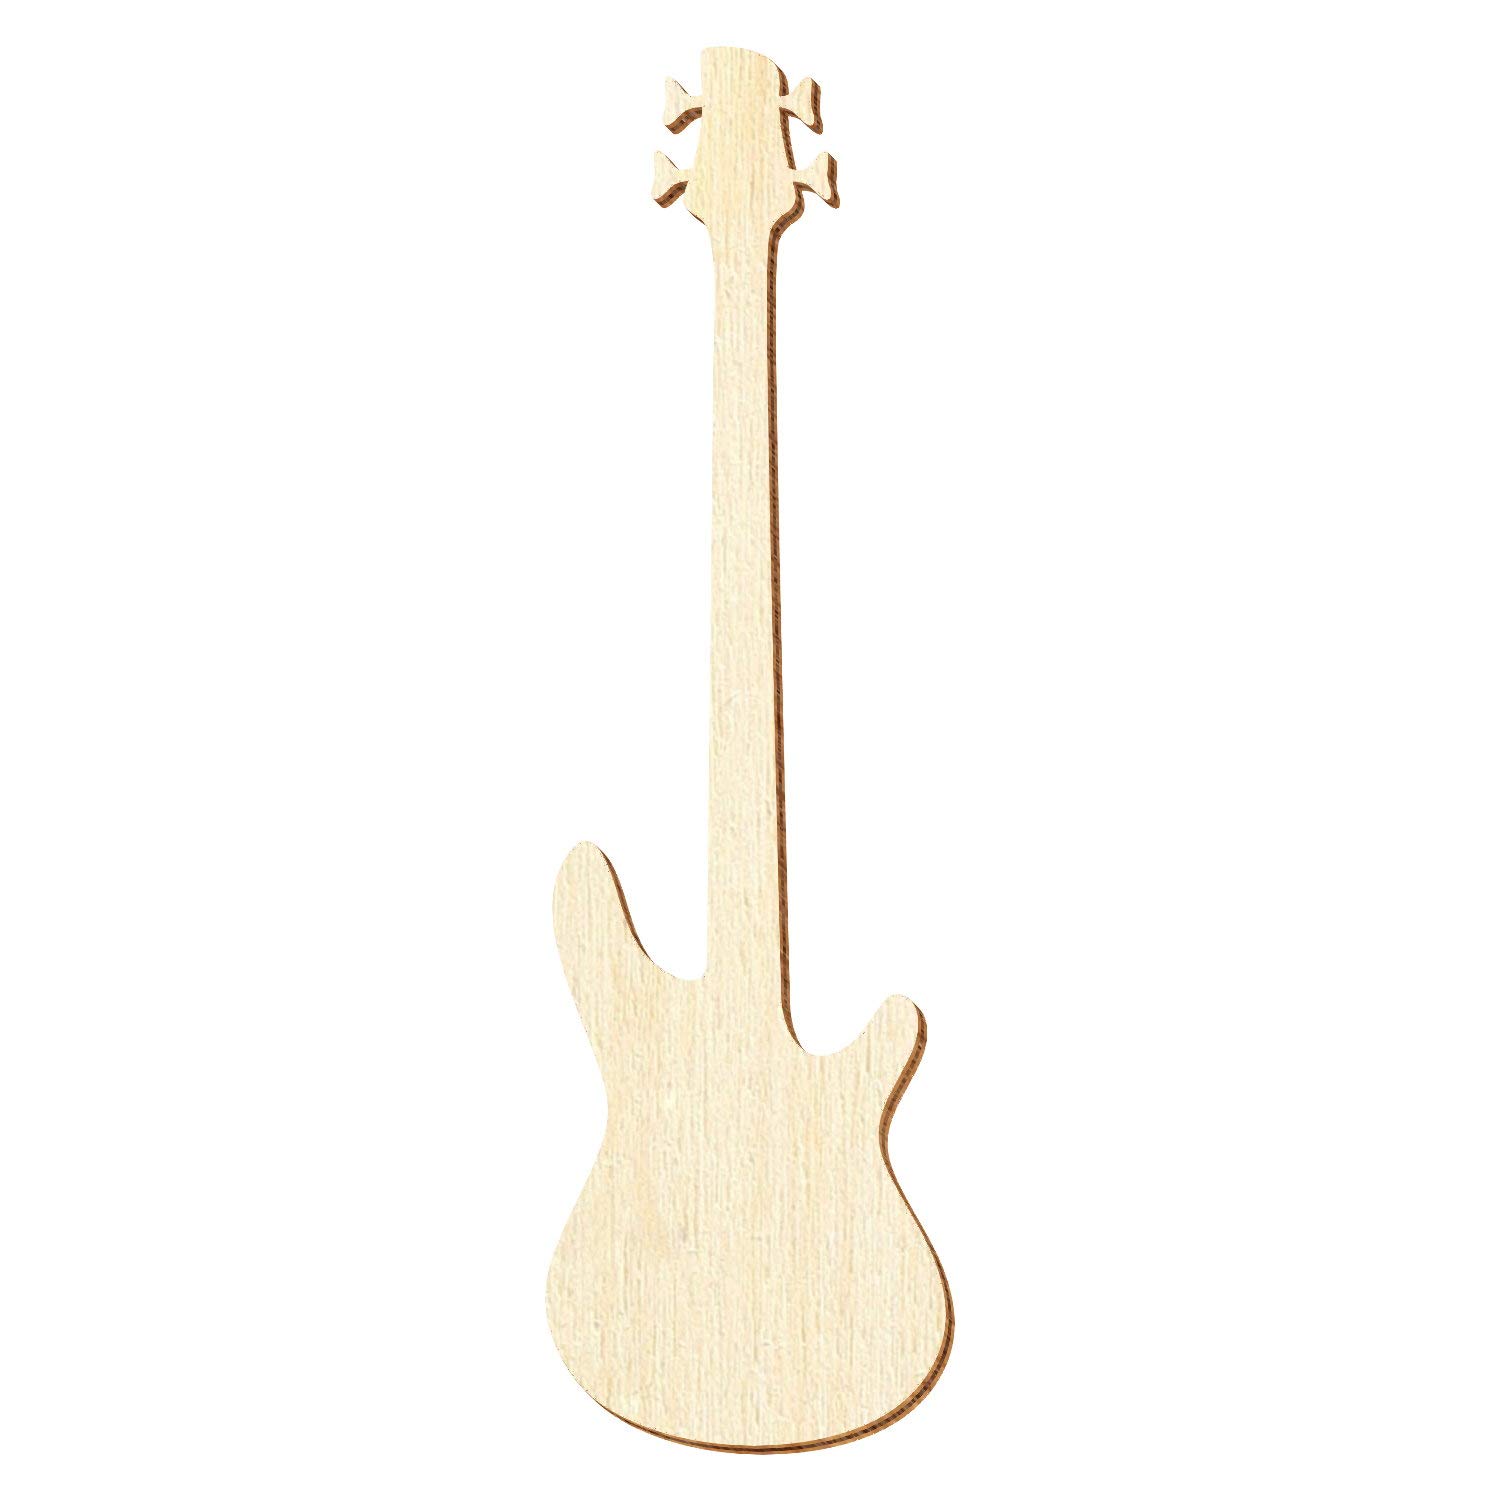 Holz Bassgitarre - Deko Zuschnitte Größenauswahl, Pack mit:25 Stück, Größe:33cm